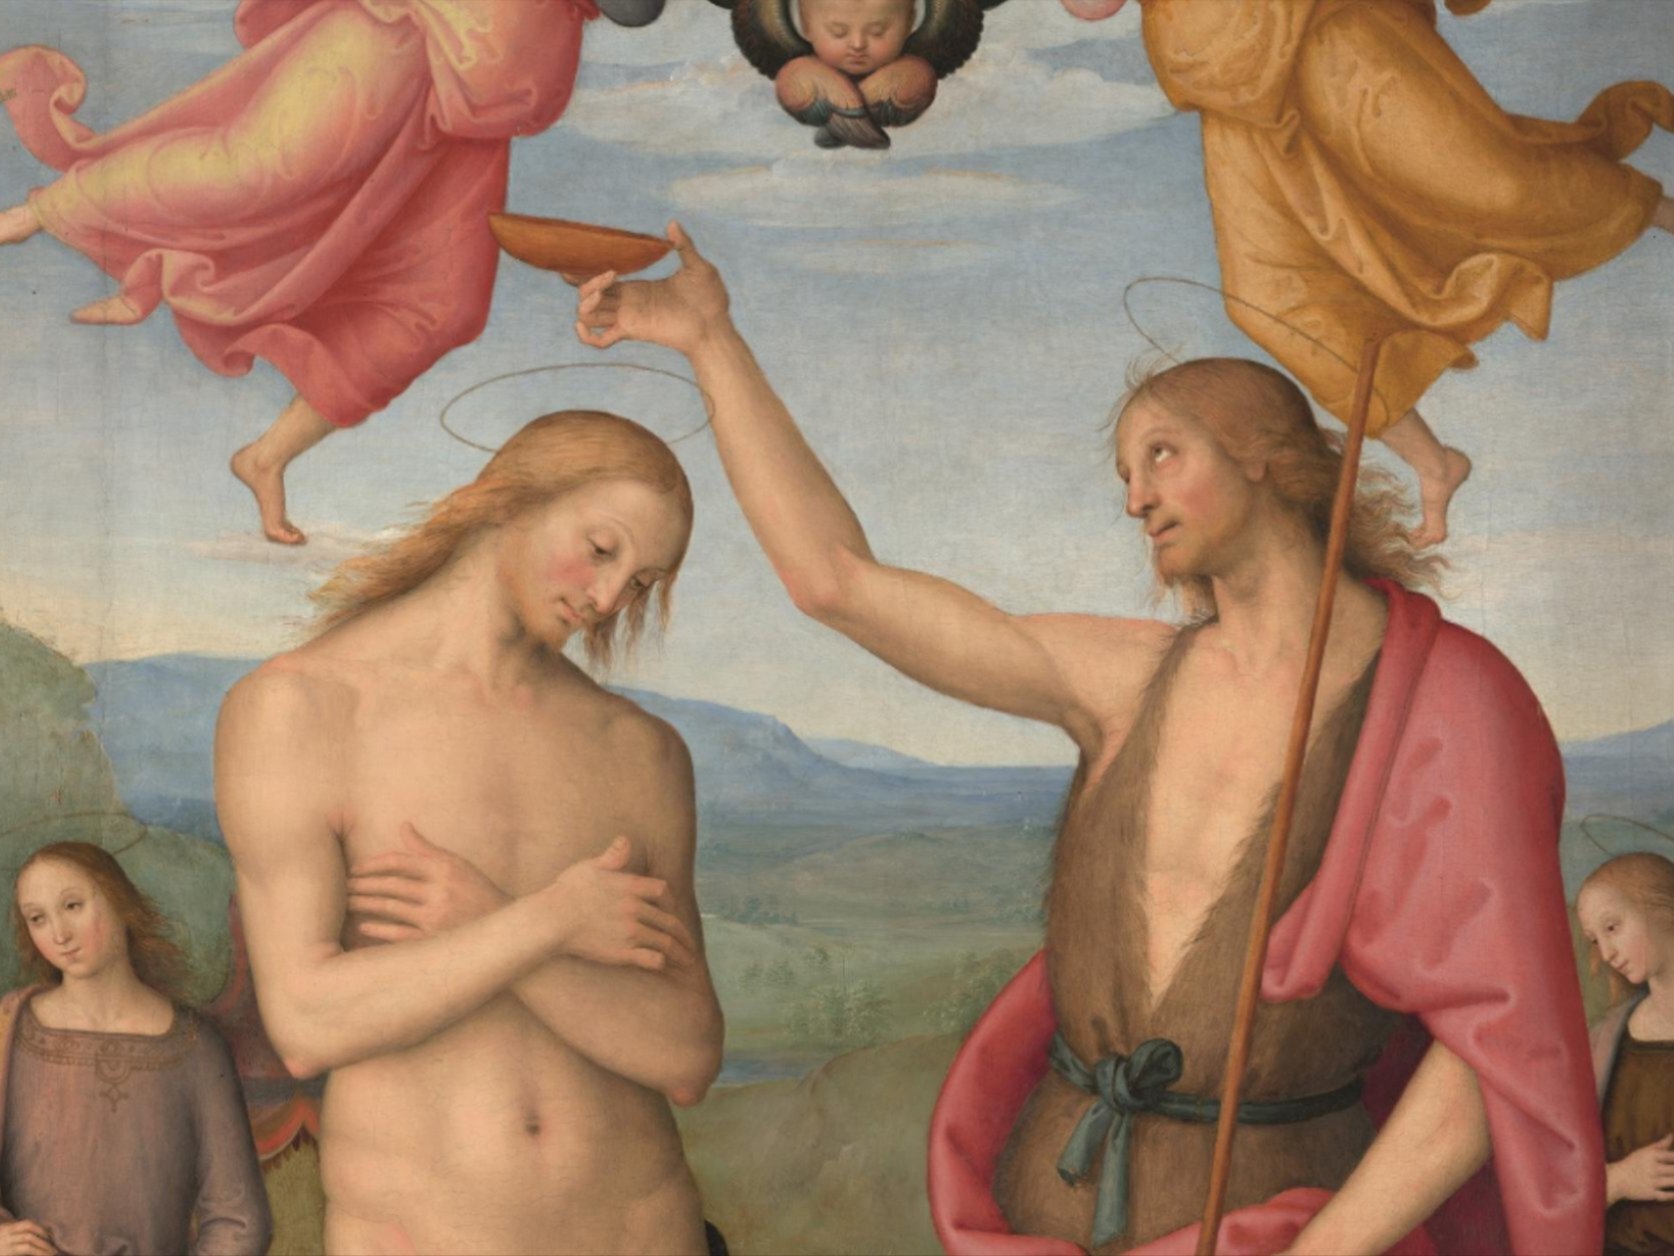 LA MOSTRA DI NATALE Palazzo Marino ospita per le festività natalizie “Il Battesimo di Cristo” del Perugino